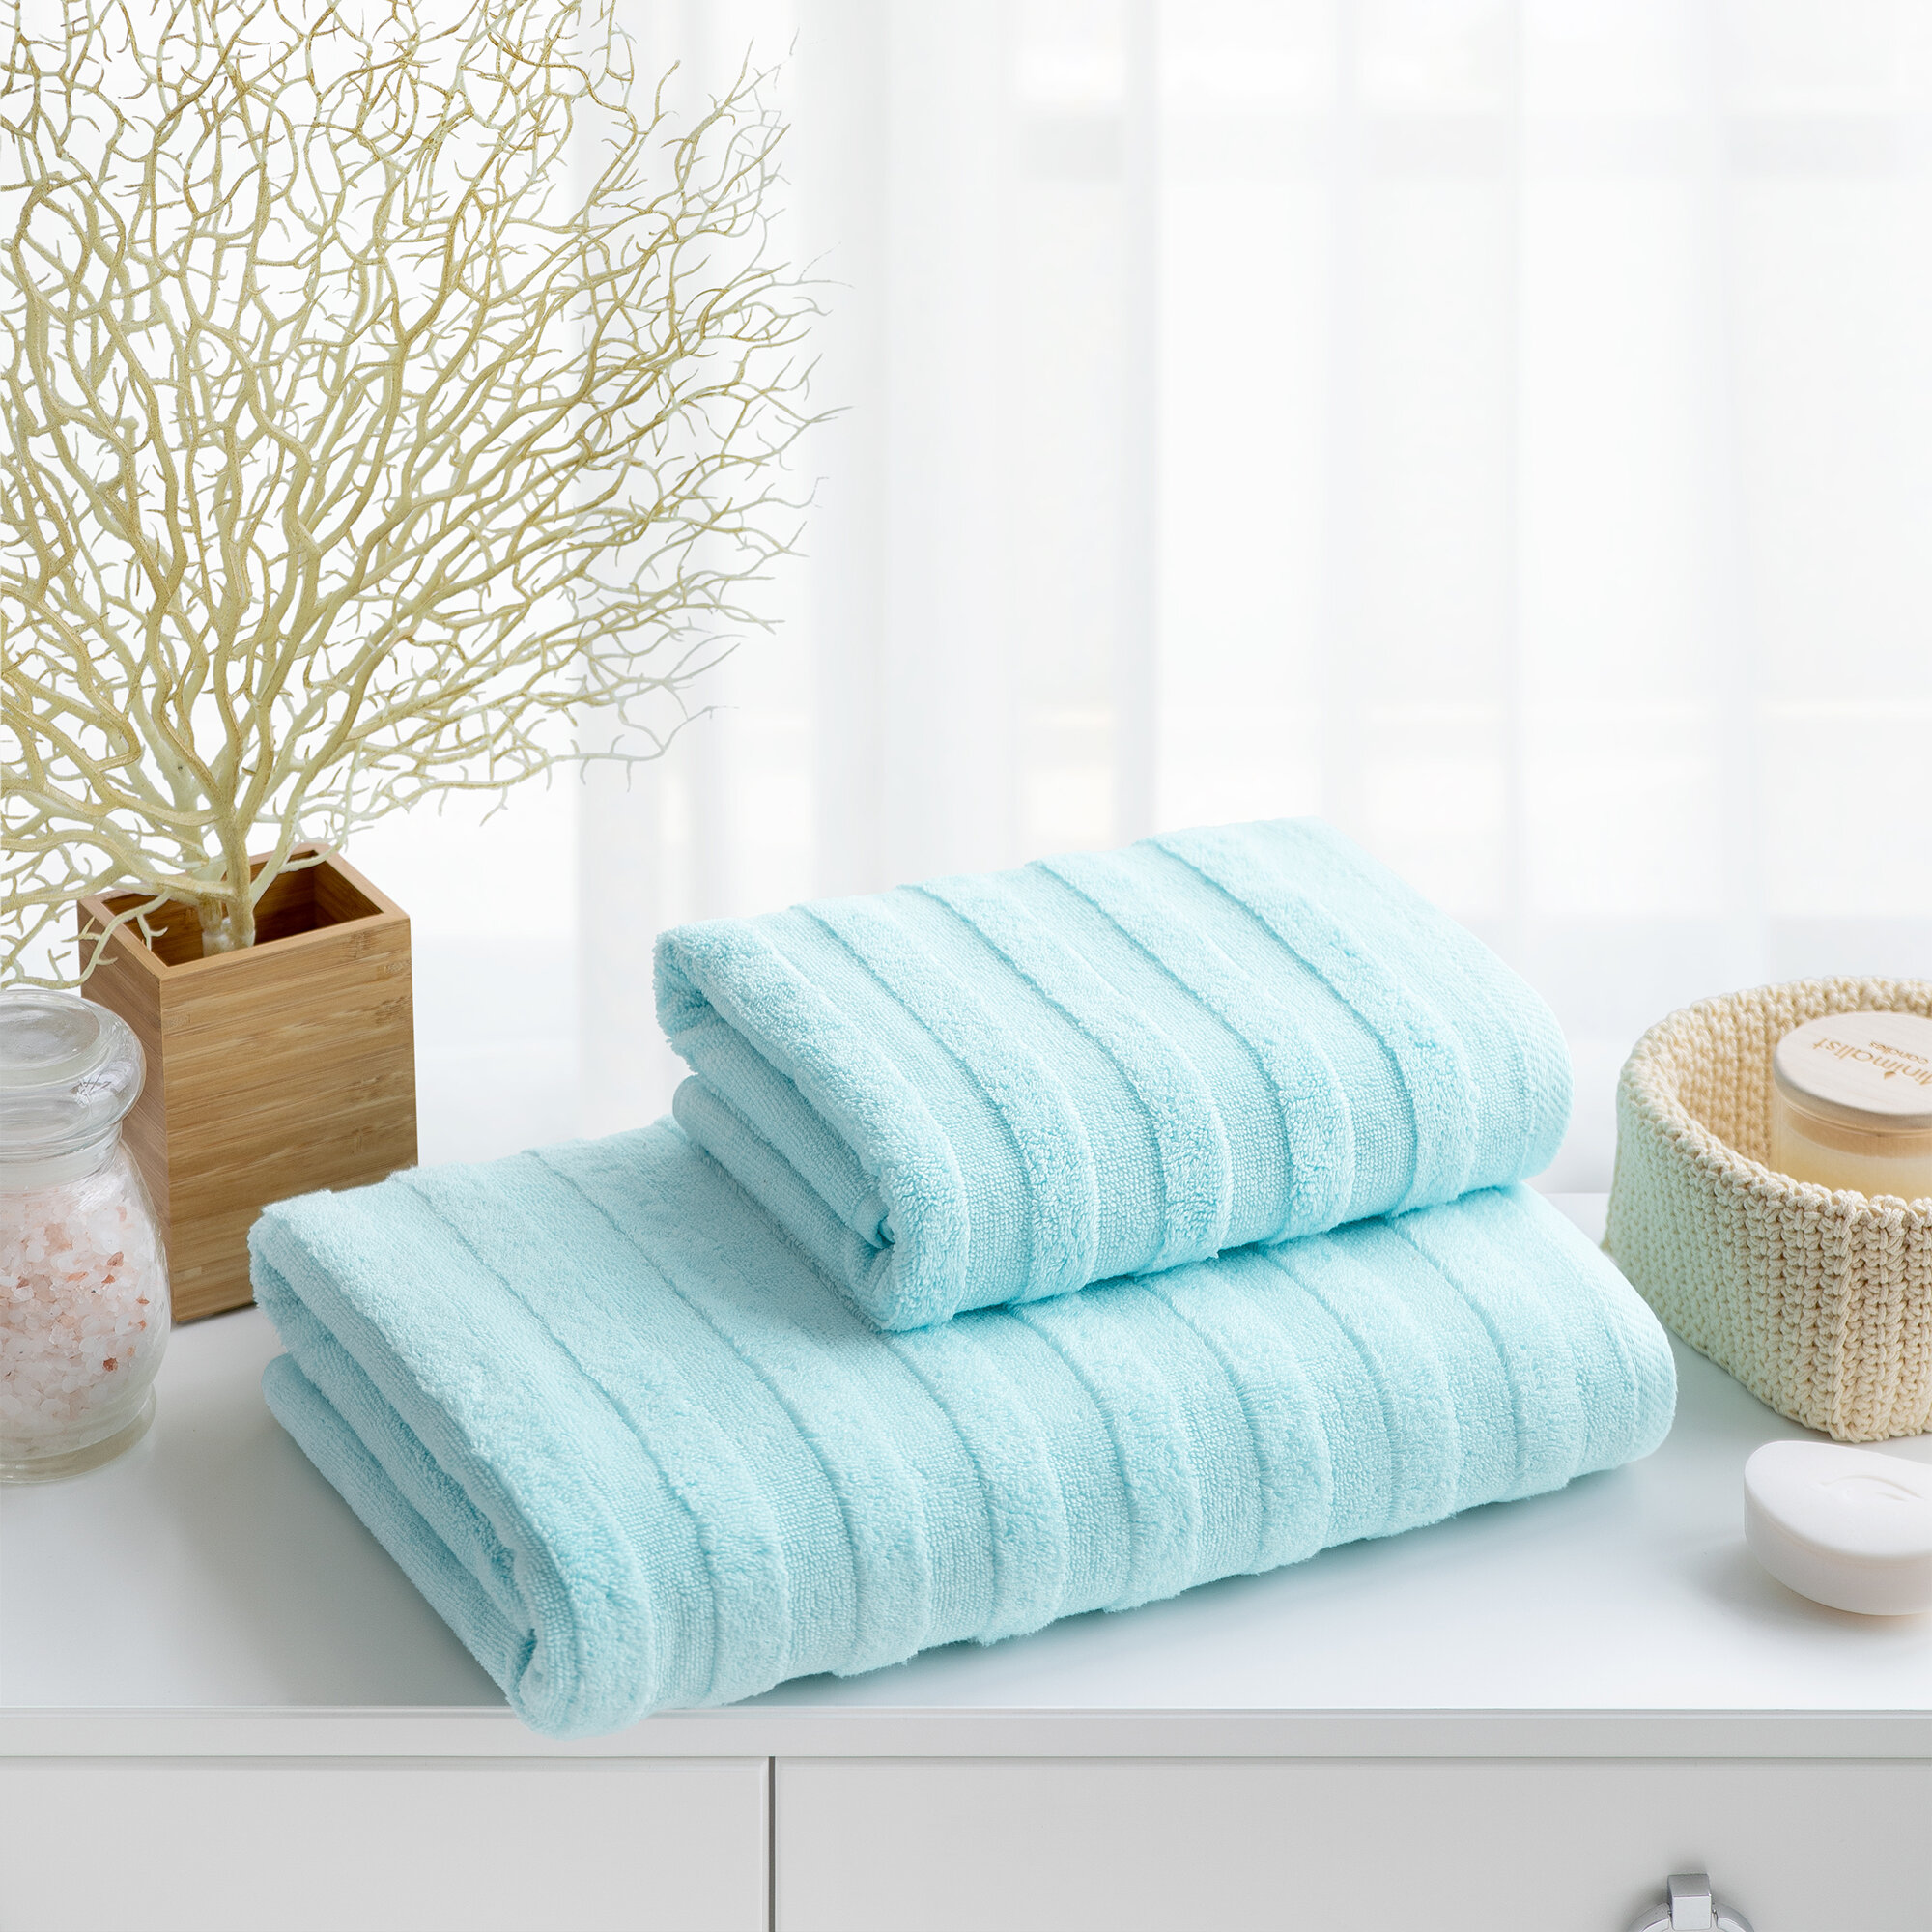 Набор махровых полотенец для ванны Verossa коллекция Stripe цвет Нежно-голубой, 2 предмета 70x140 см - 1 шт, 50x90 см - 1 шт